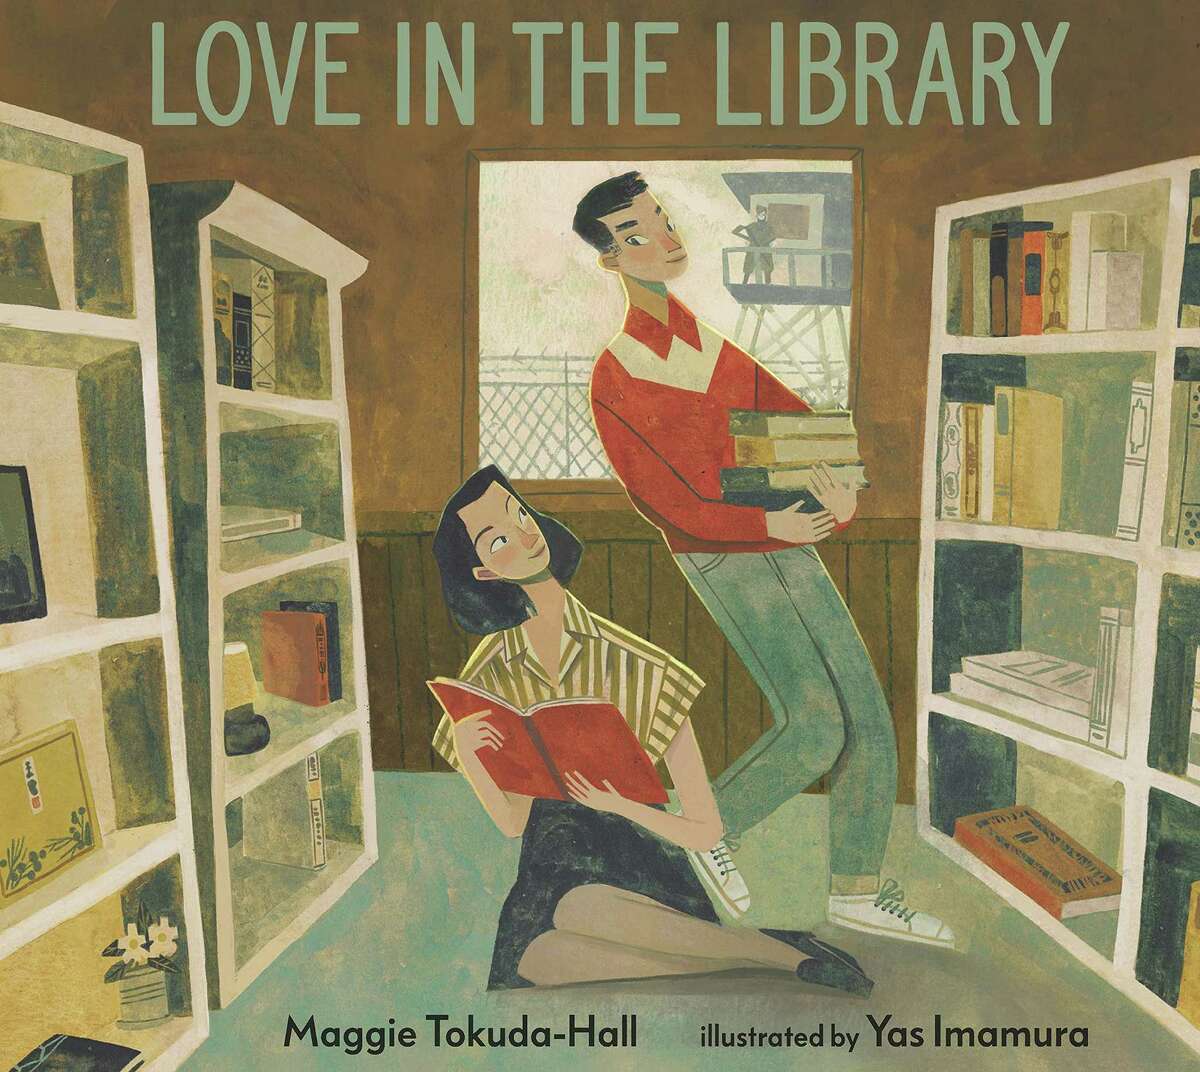 奥克兰作家麦琪·德田霍尔(Maggie tokada - hall)的《图书馆里的爱》(Love in the Library)讲述了日裔美国人被强制监禁期间，在战争迁移营中成长起来的一段关系。